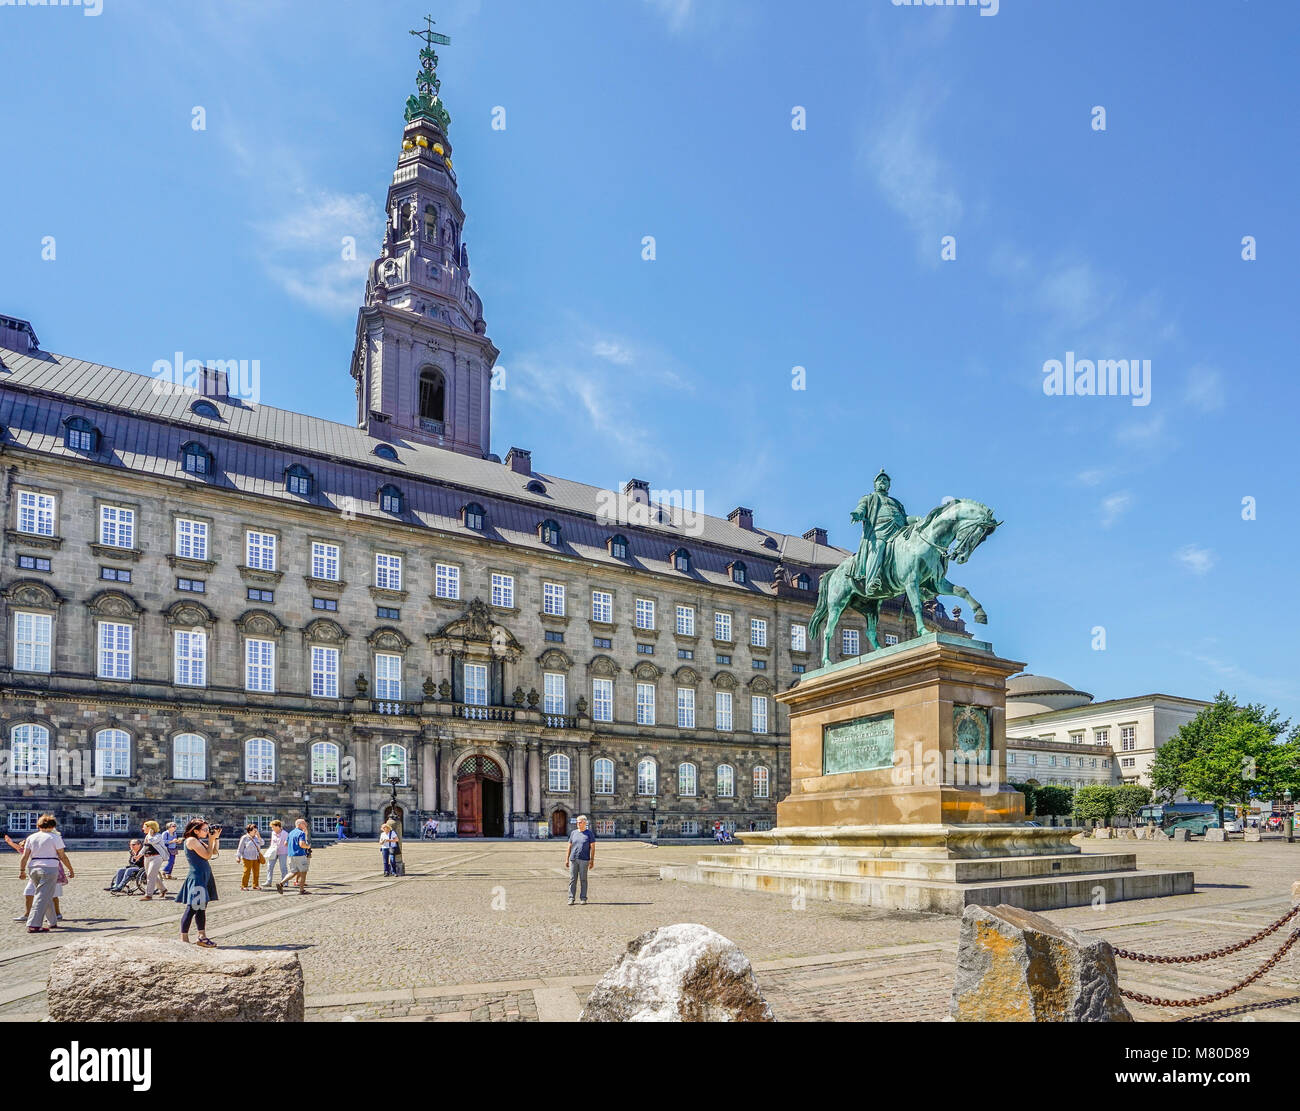 La Danimarca, la Zelanda, Copenaghen, la statua equestre di Federico VII a Christianborg Palazzo, sede del Folketinget il parlamento danese Foto Stock